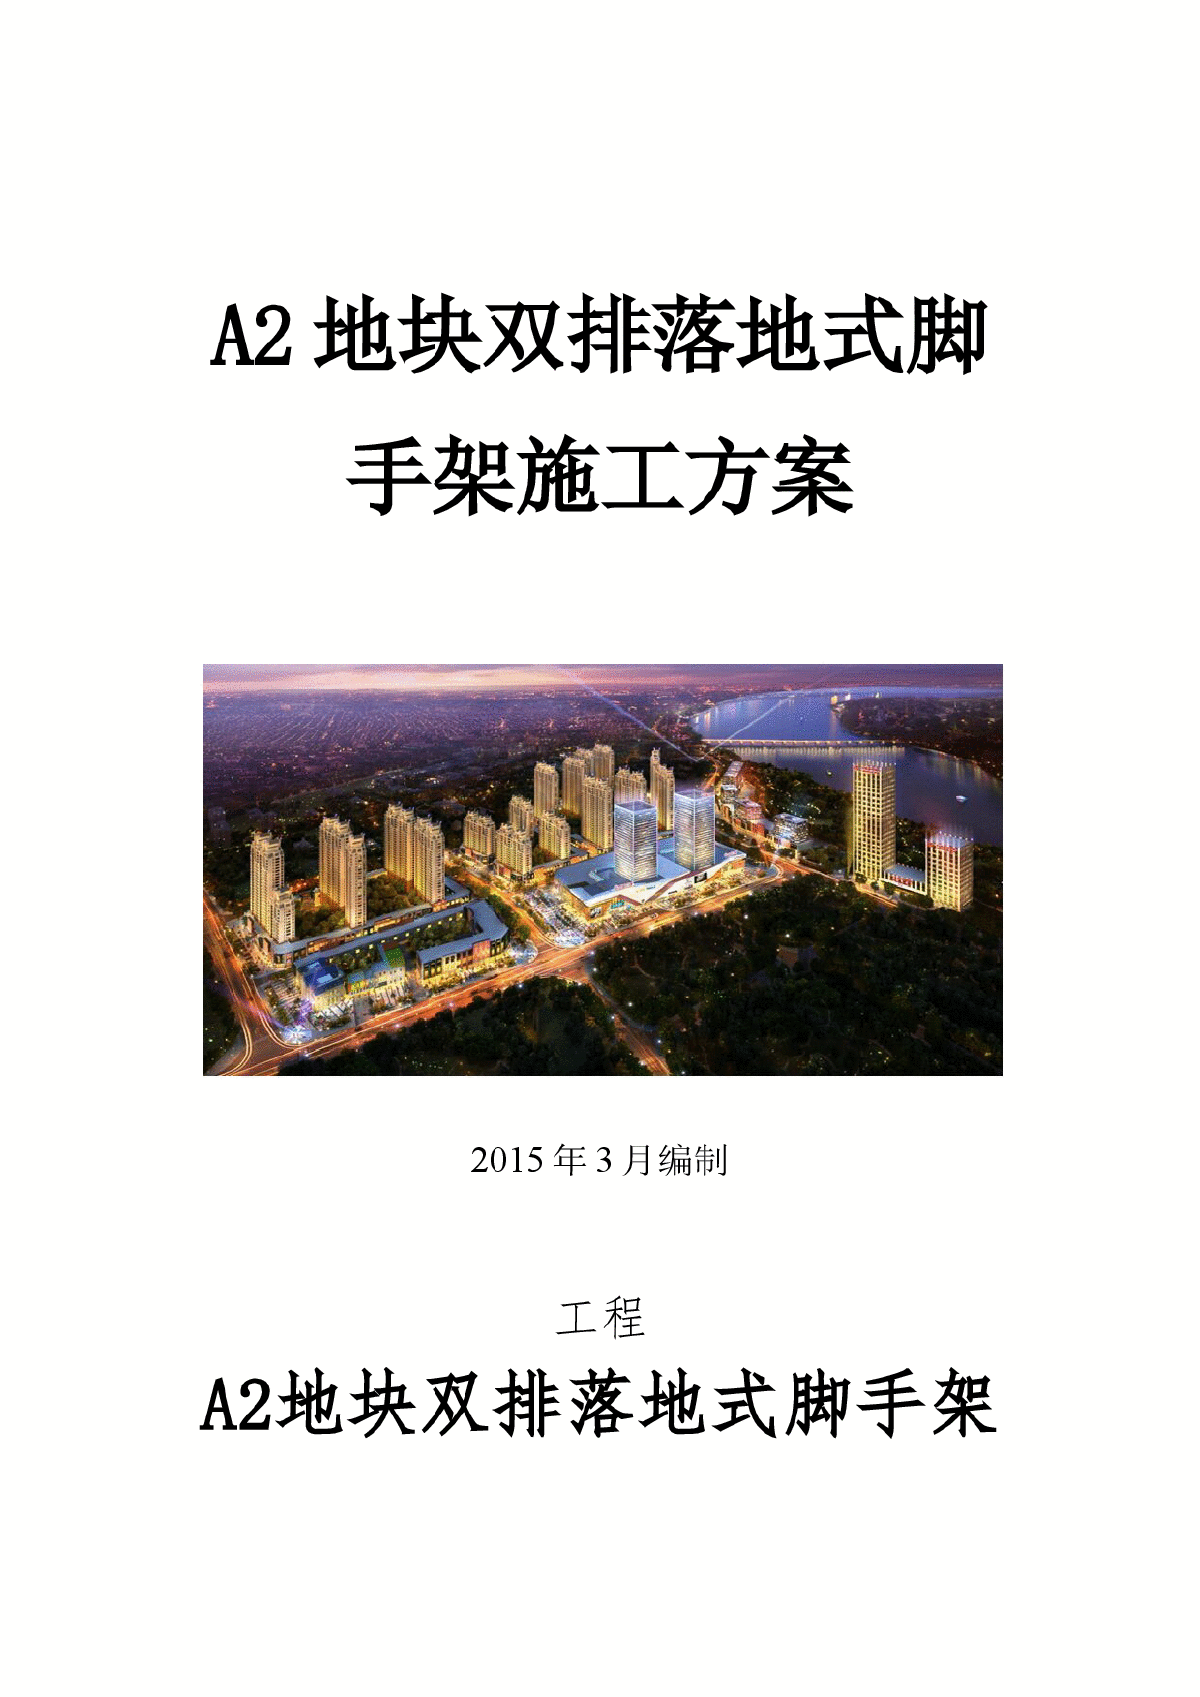 [江苏]框剪结构住宅楼工程脚手架工程施工方案